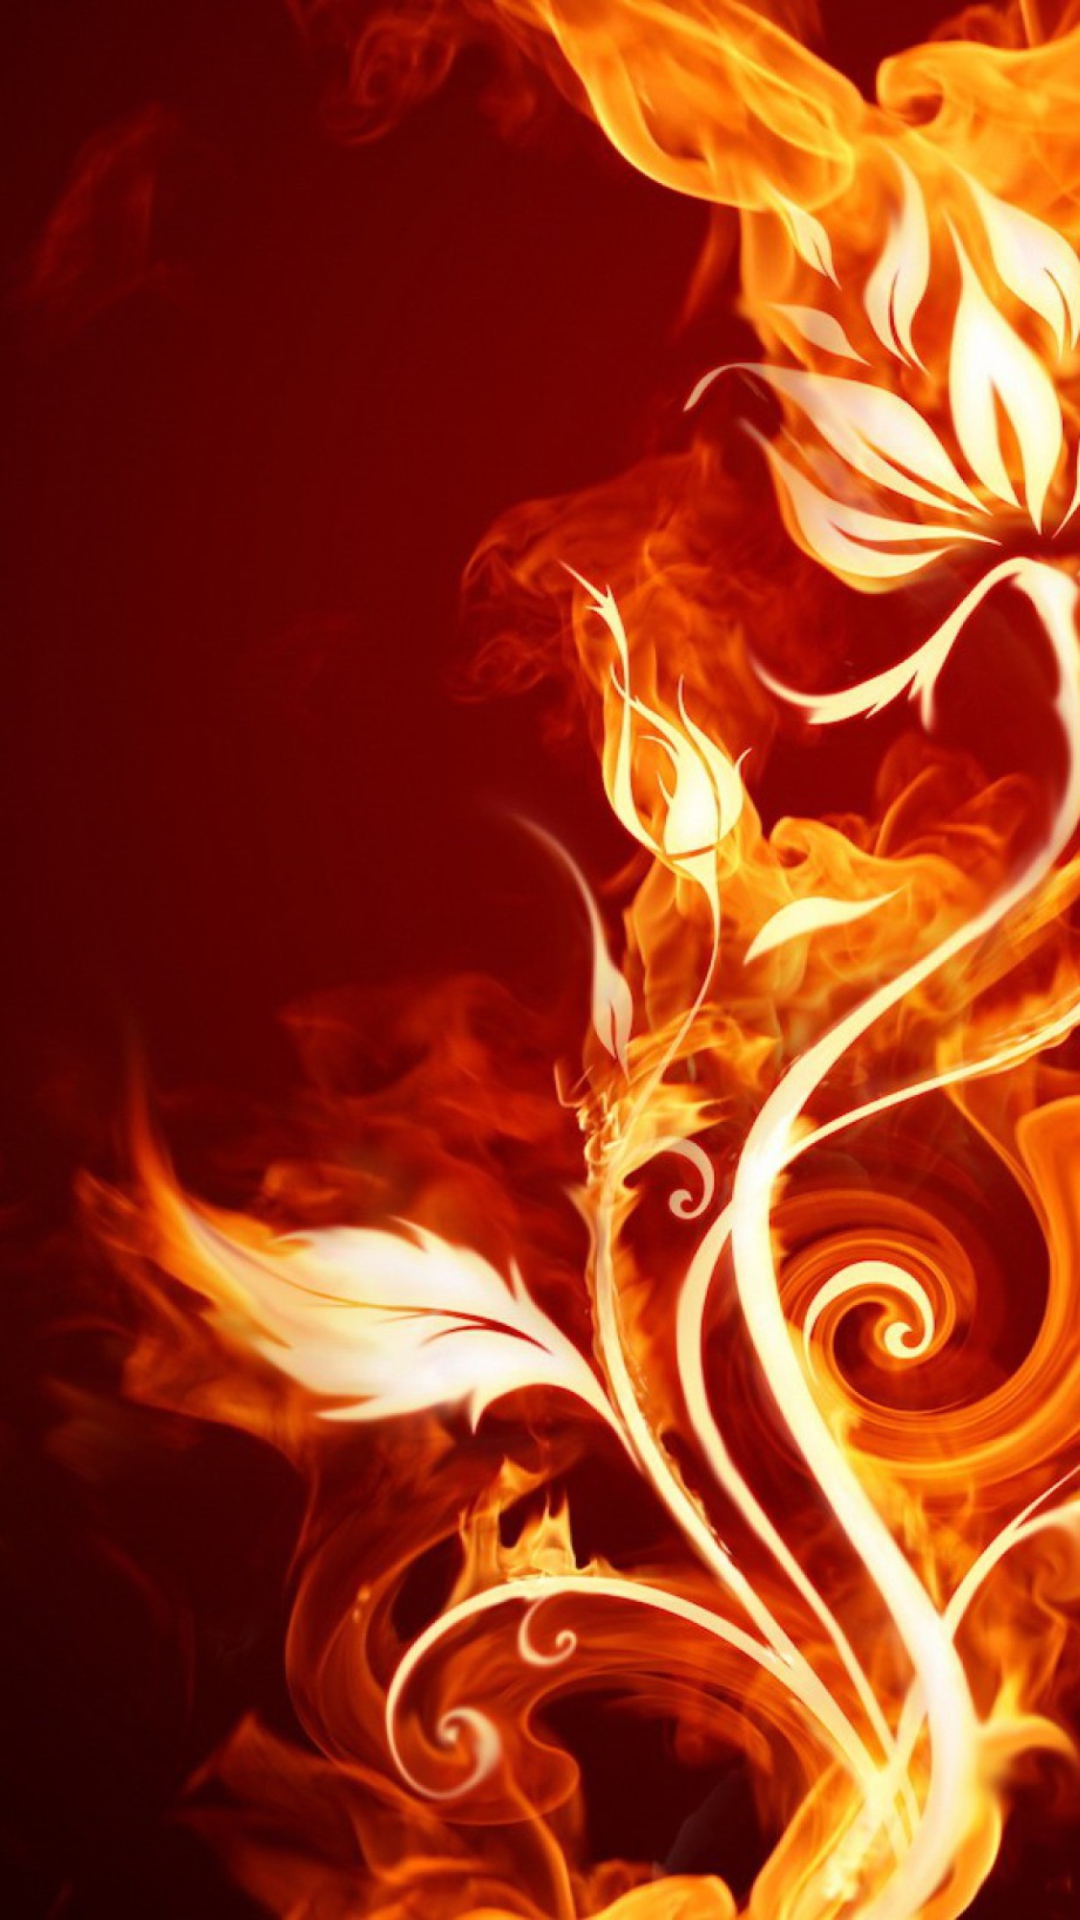 Fire Flower wallpaper 1080x1920